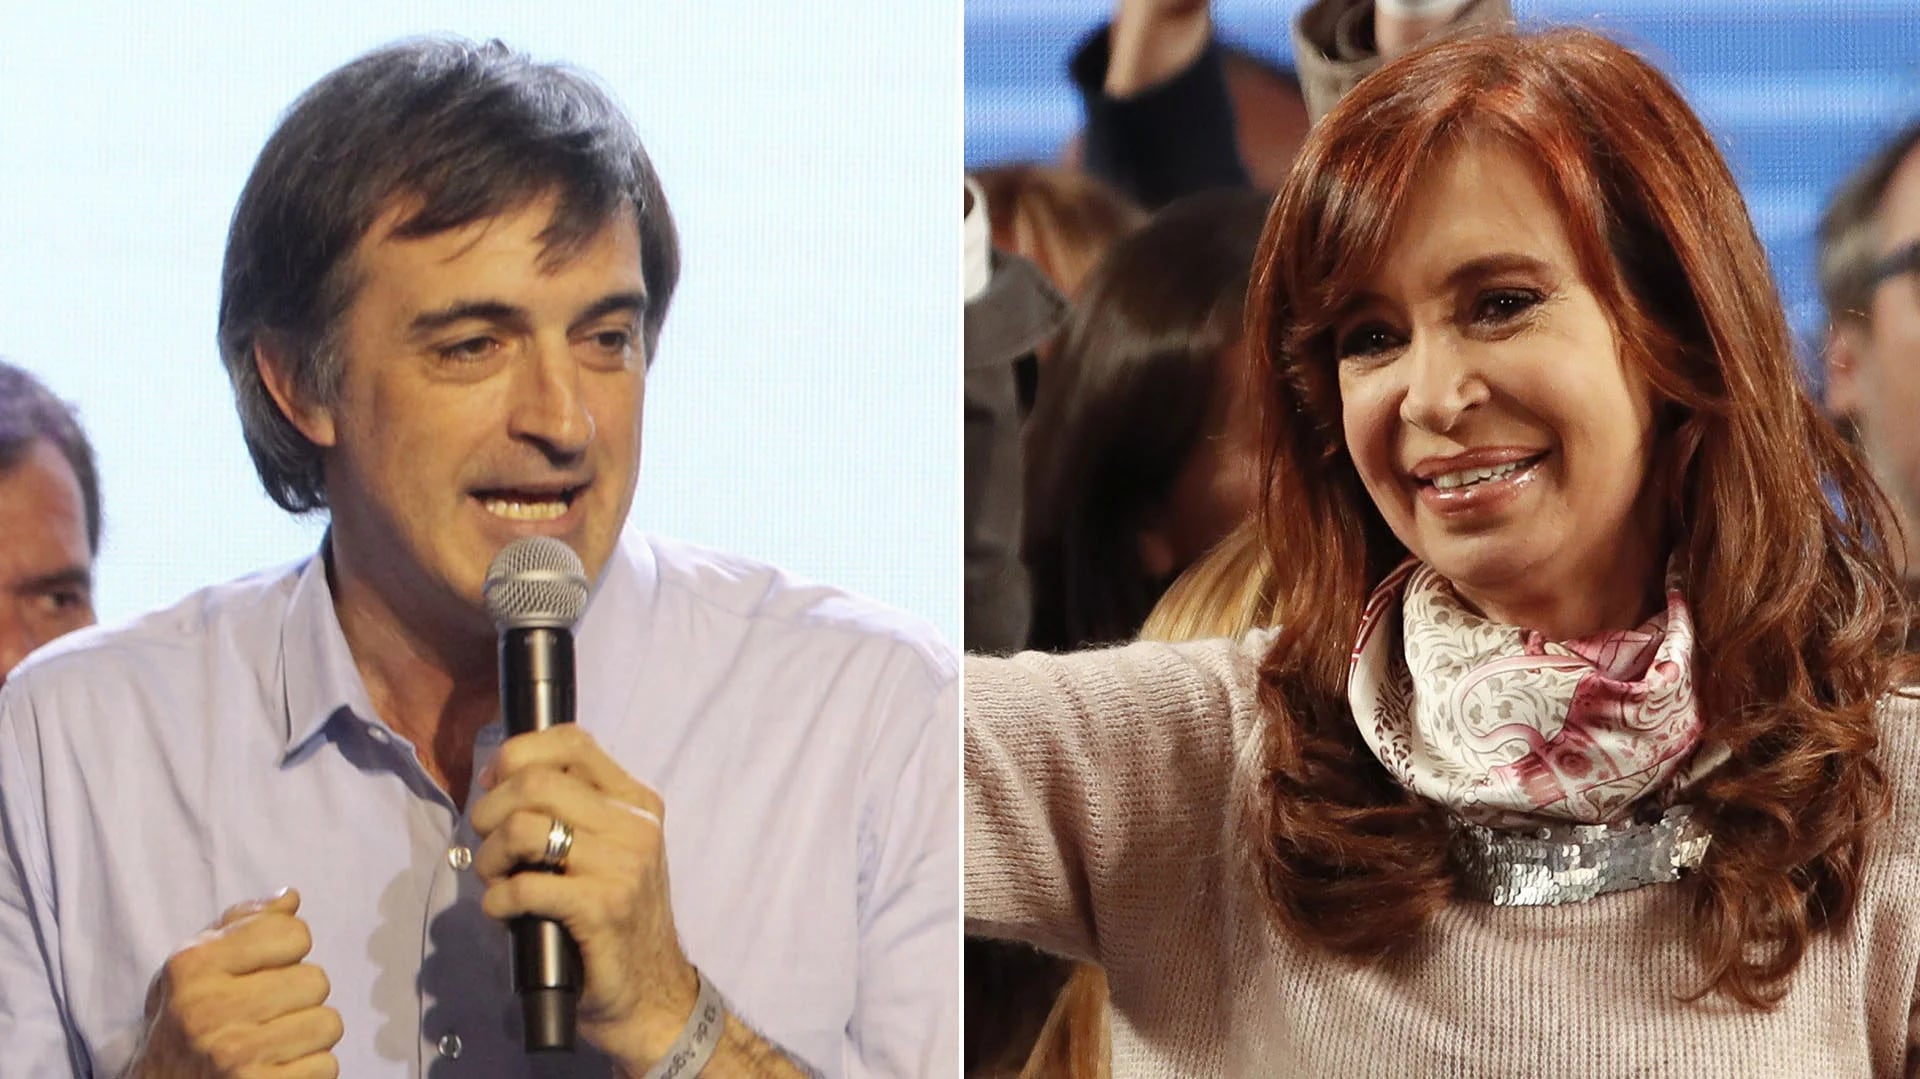 Esteban Bullrich y Cristina Kirchner, candidatos del oficialismo y la oposición en la provincia de Buenos Aires